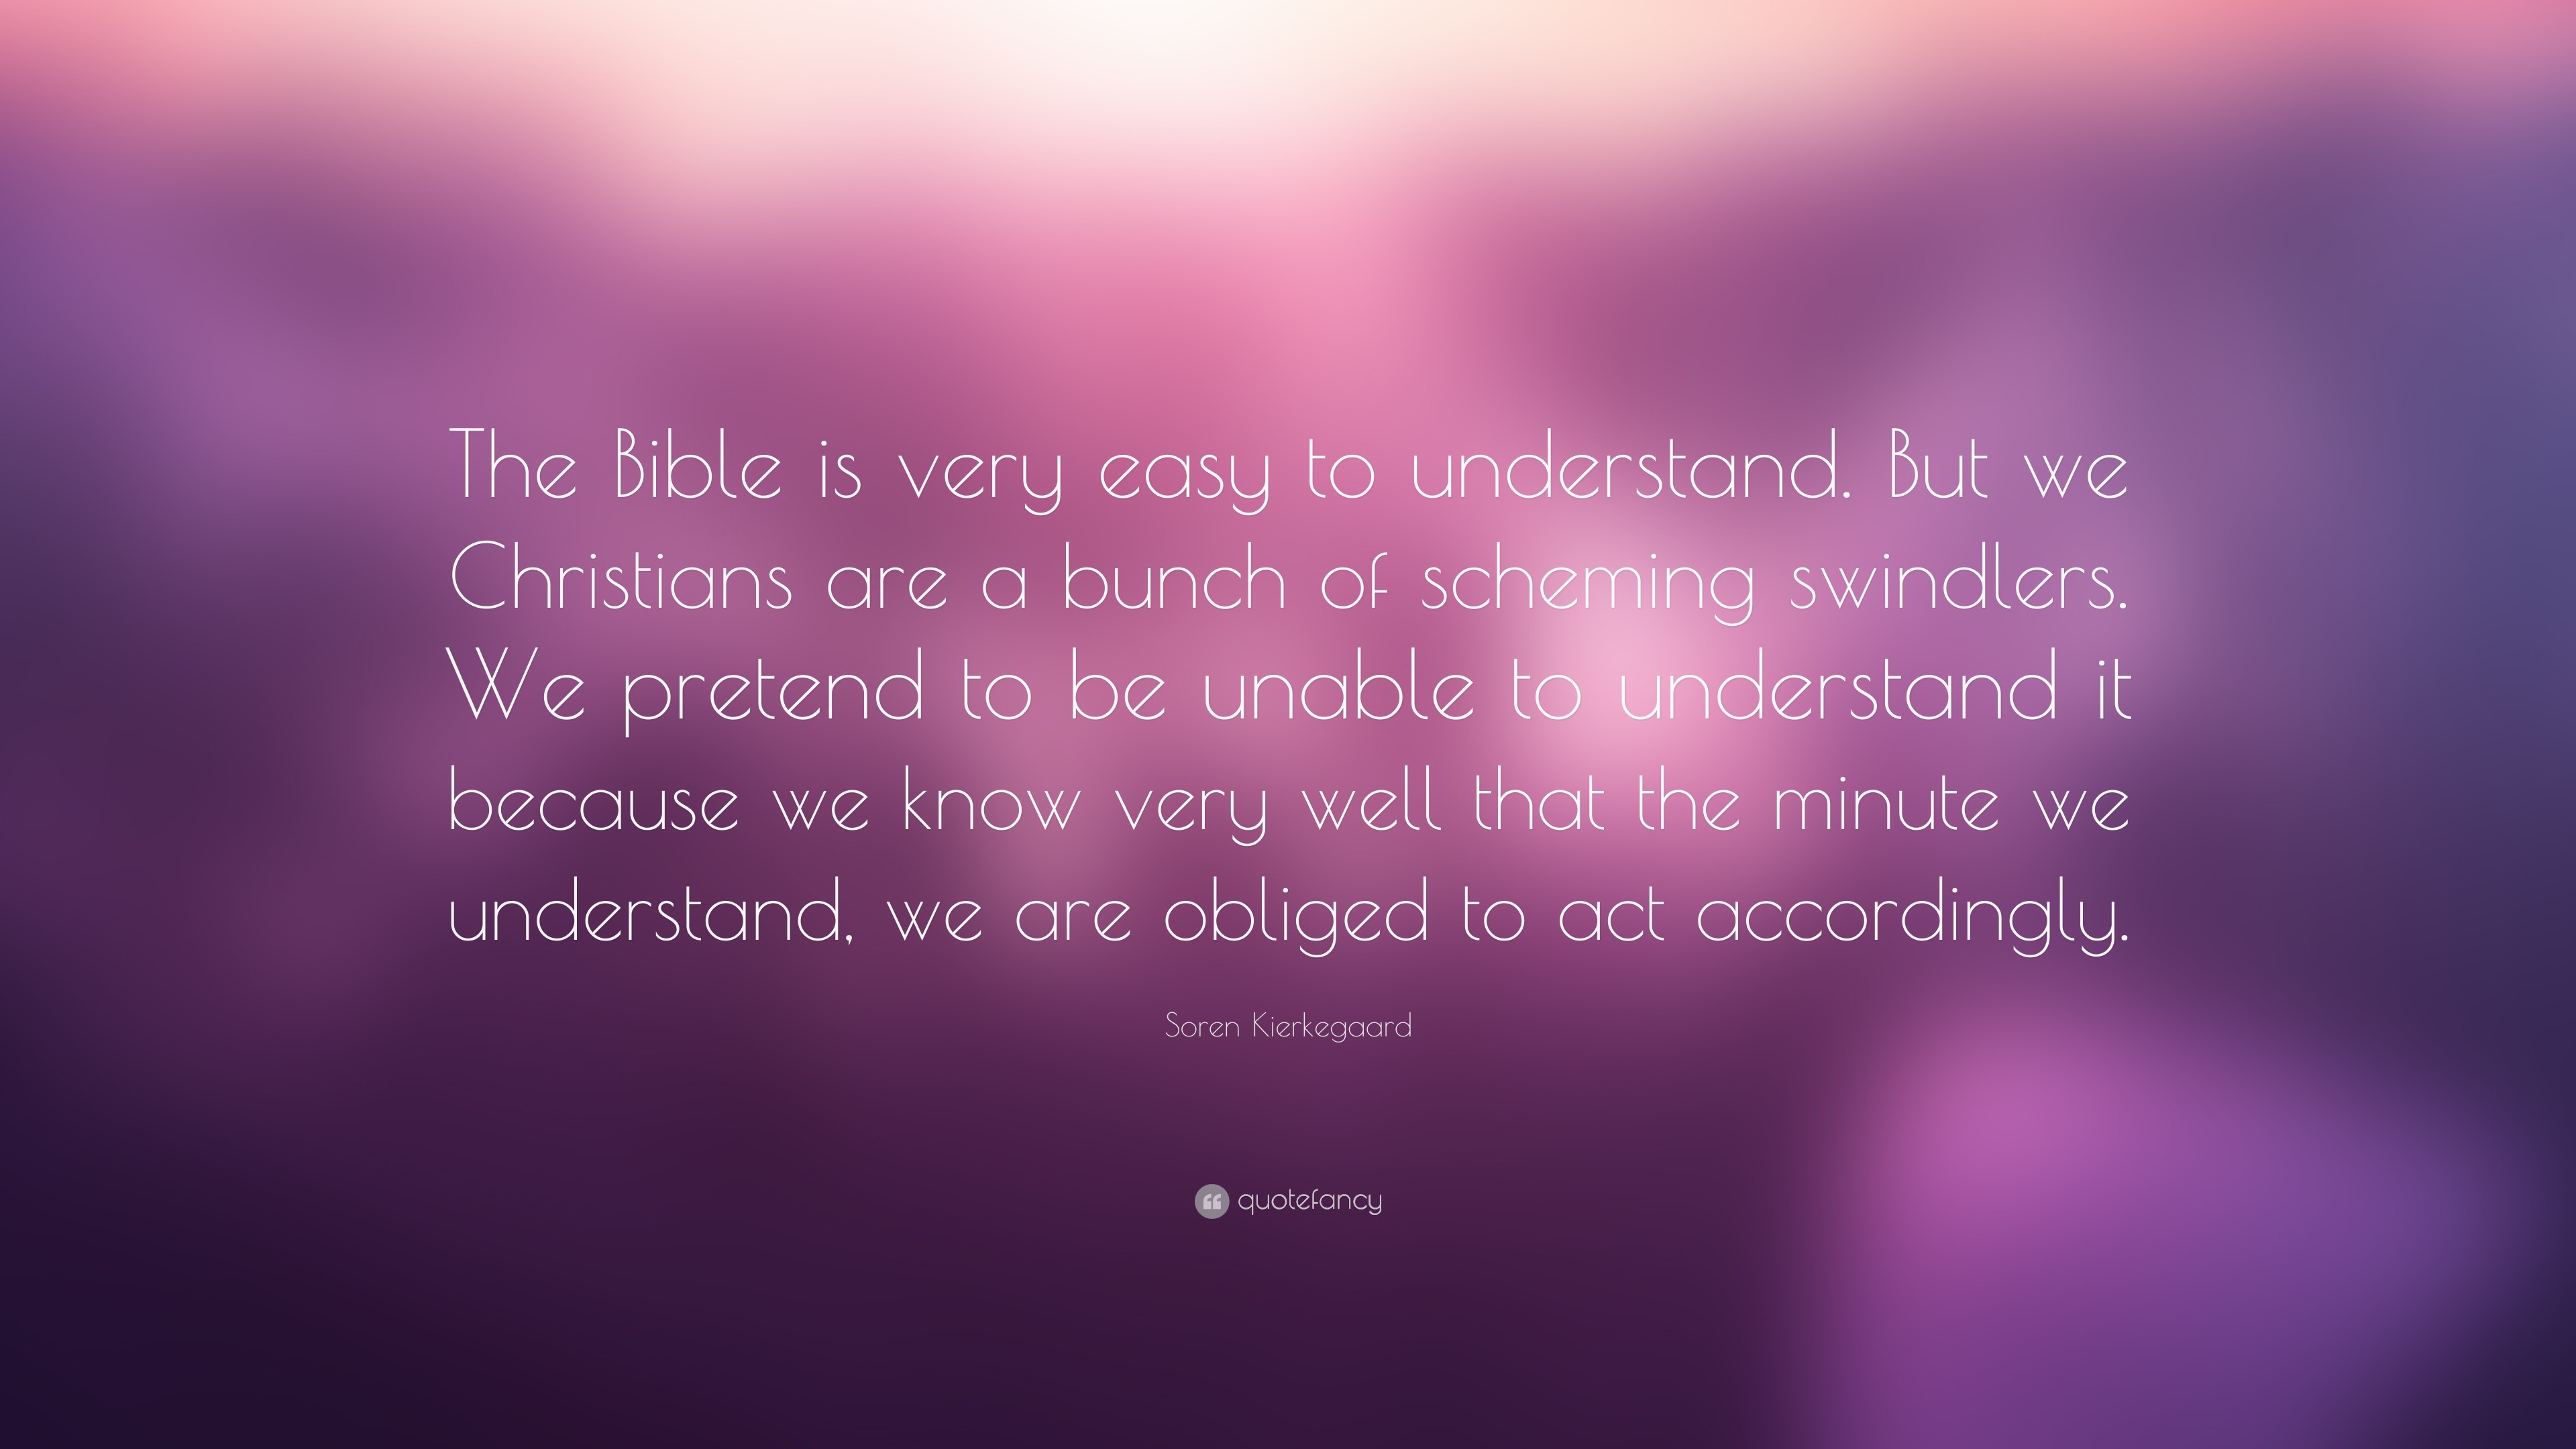 Soren Kierkegaard Quote: “The Bible is very easy to understand. But we ...